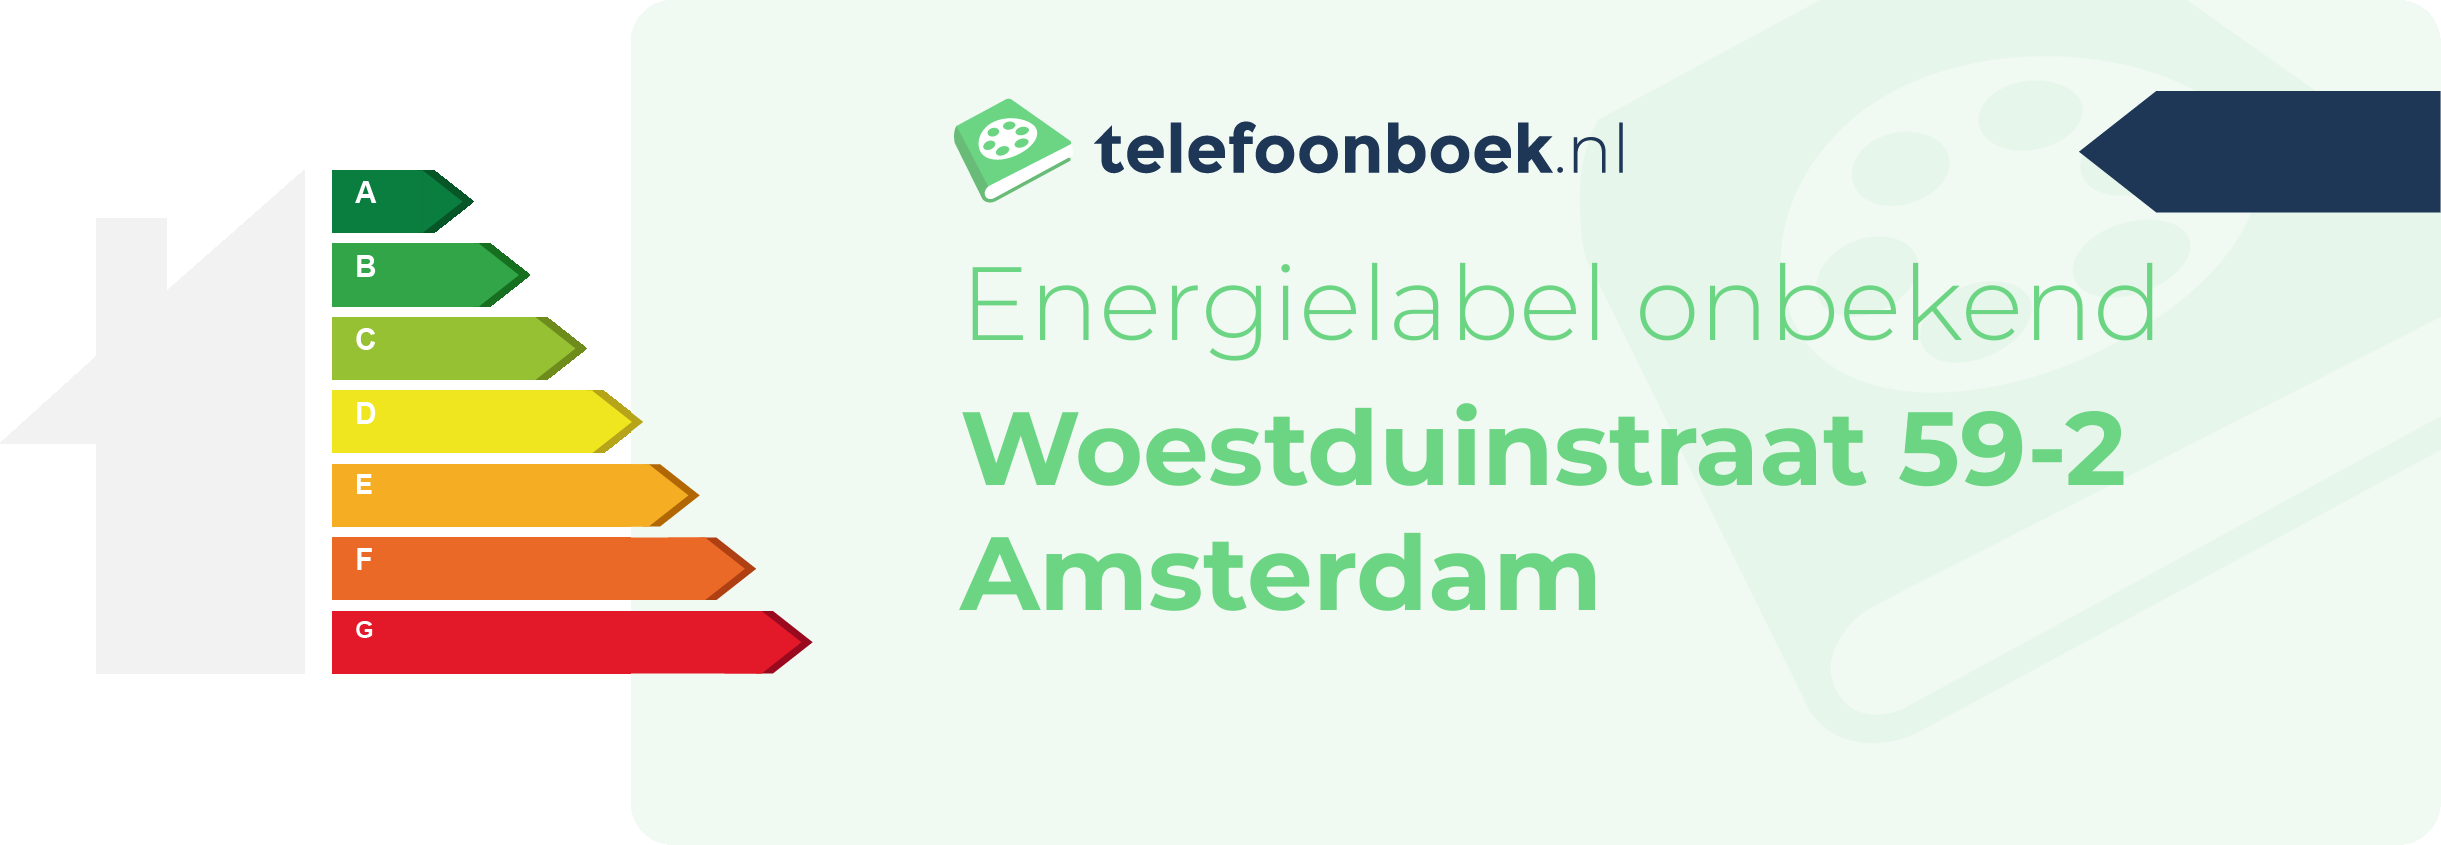 Energielabel Woestduinstraat 59-2 Amsterdam